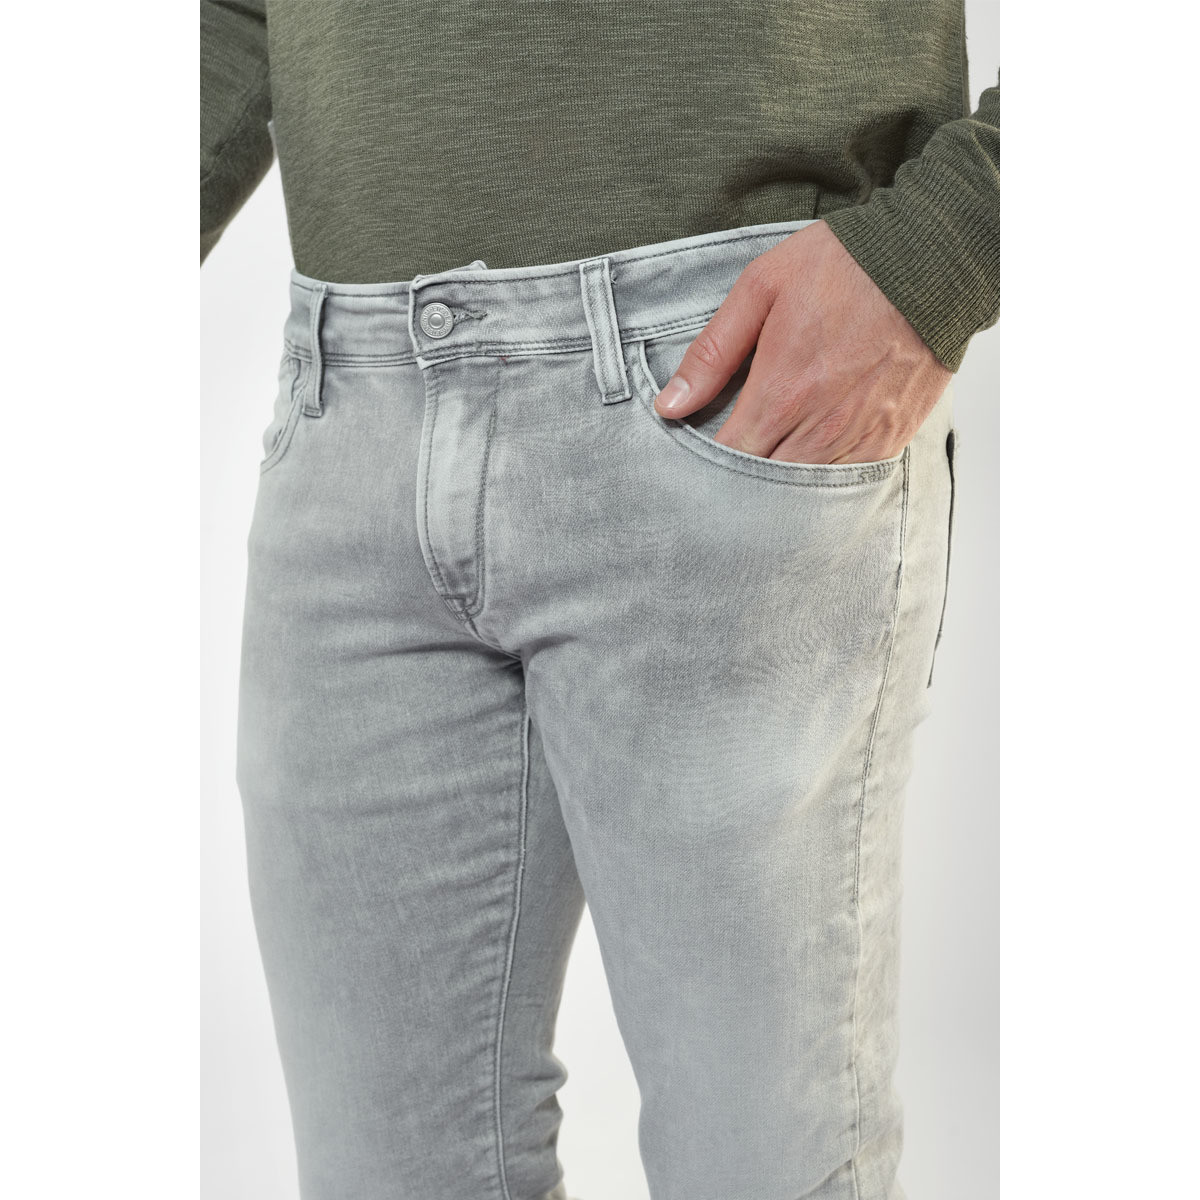 Le Temps des Cerises Gris Jogg 700/11 adjusted jeans gris poEtL0fT